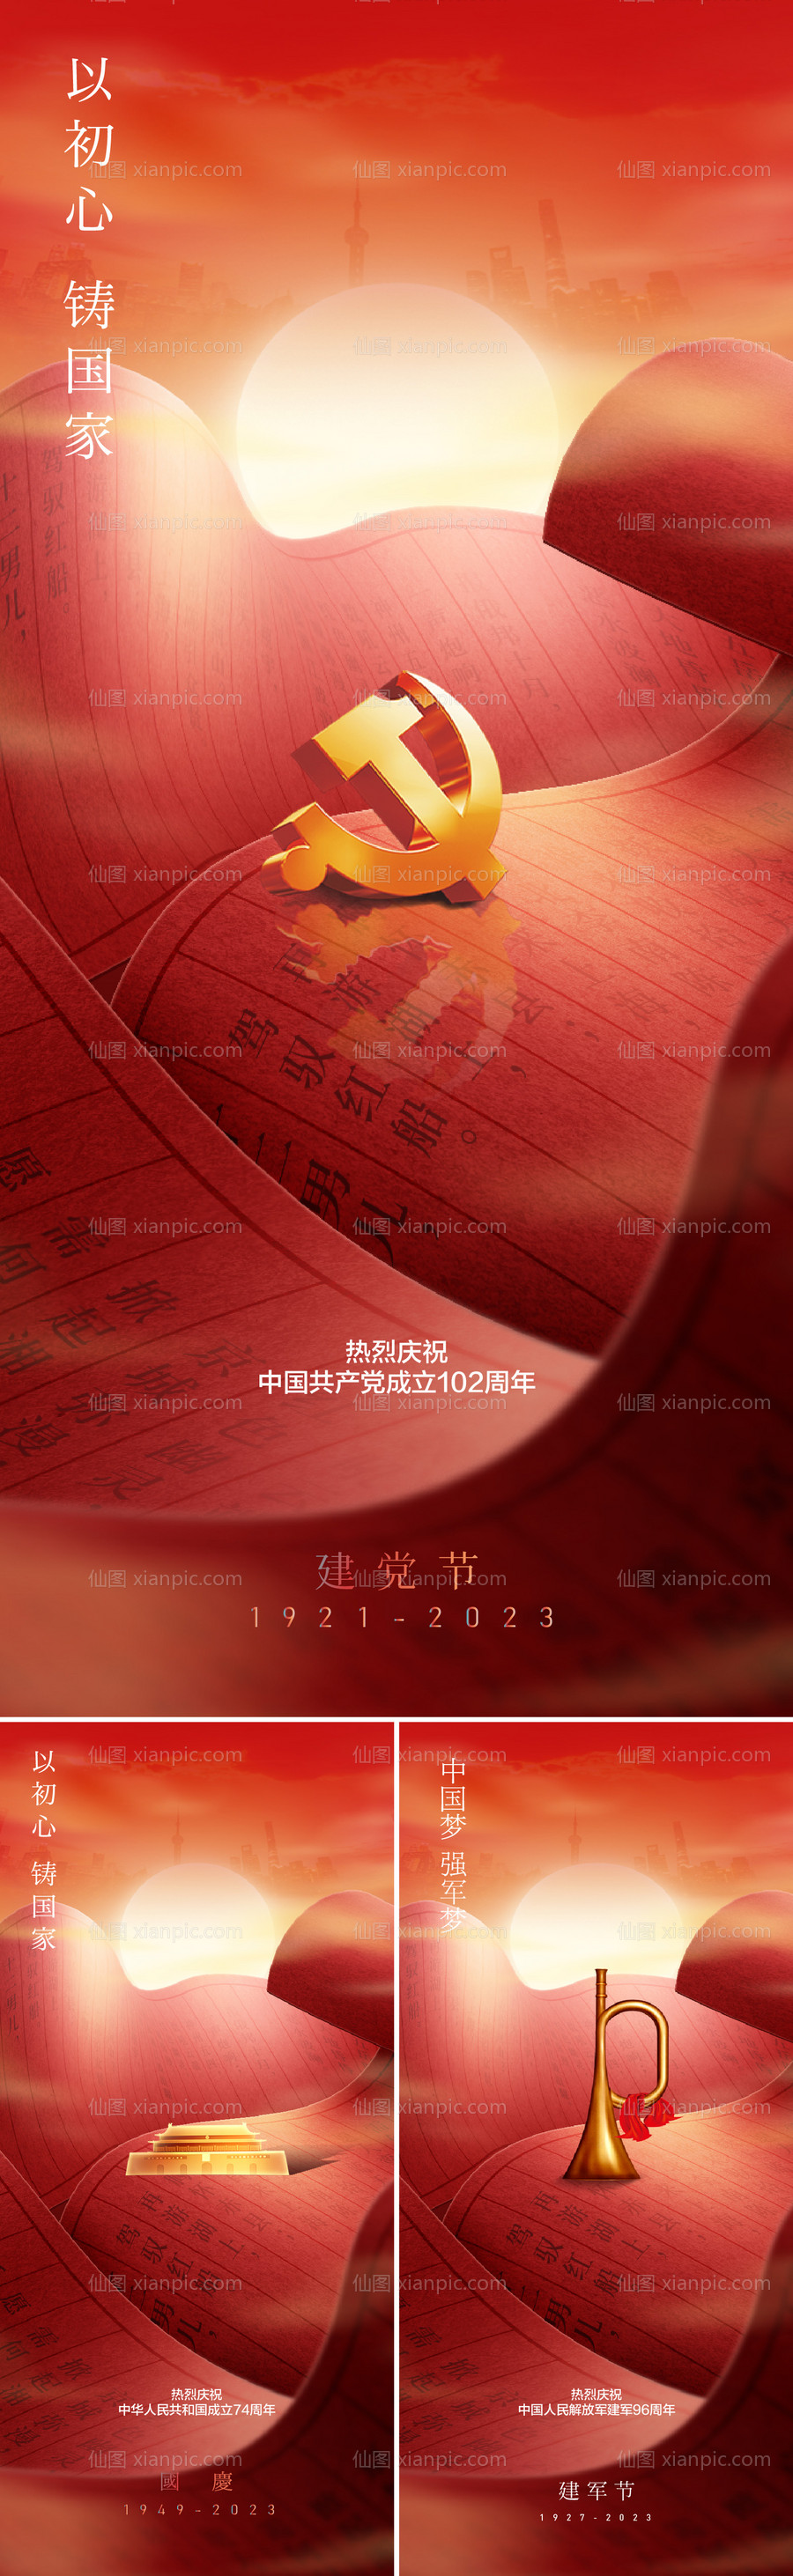 素材乐-中国红节日合集